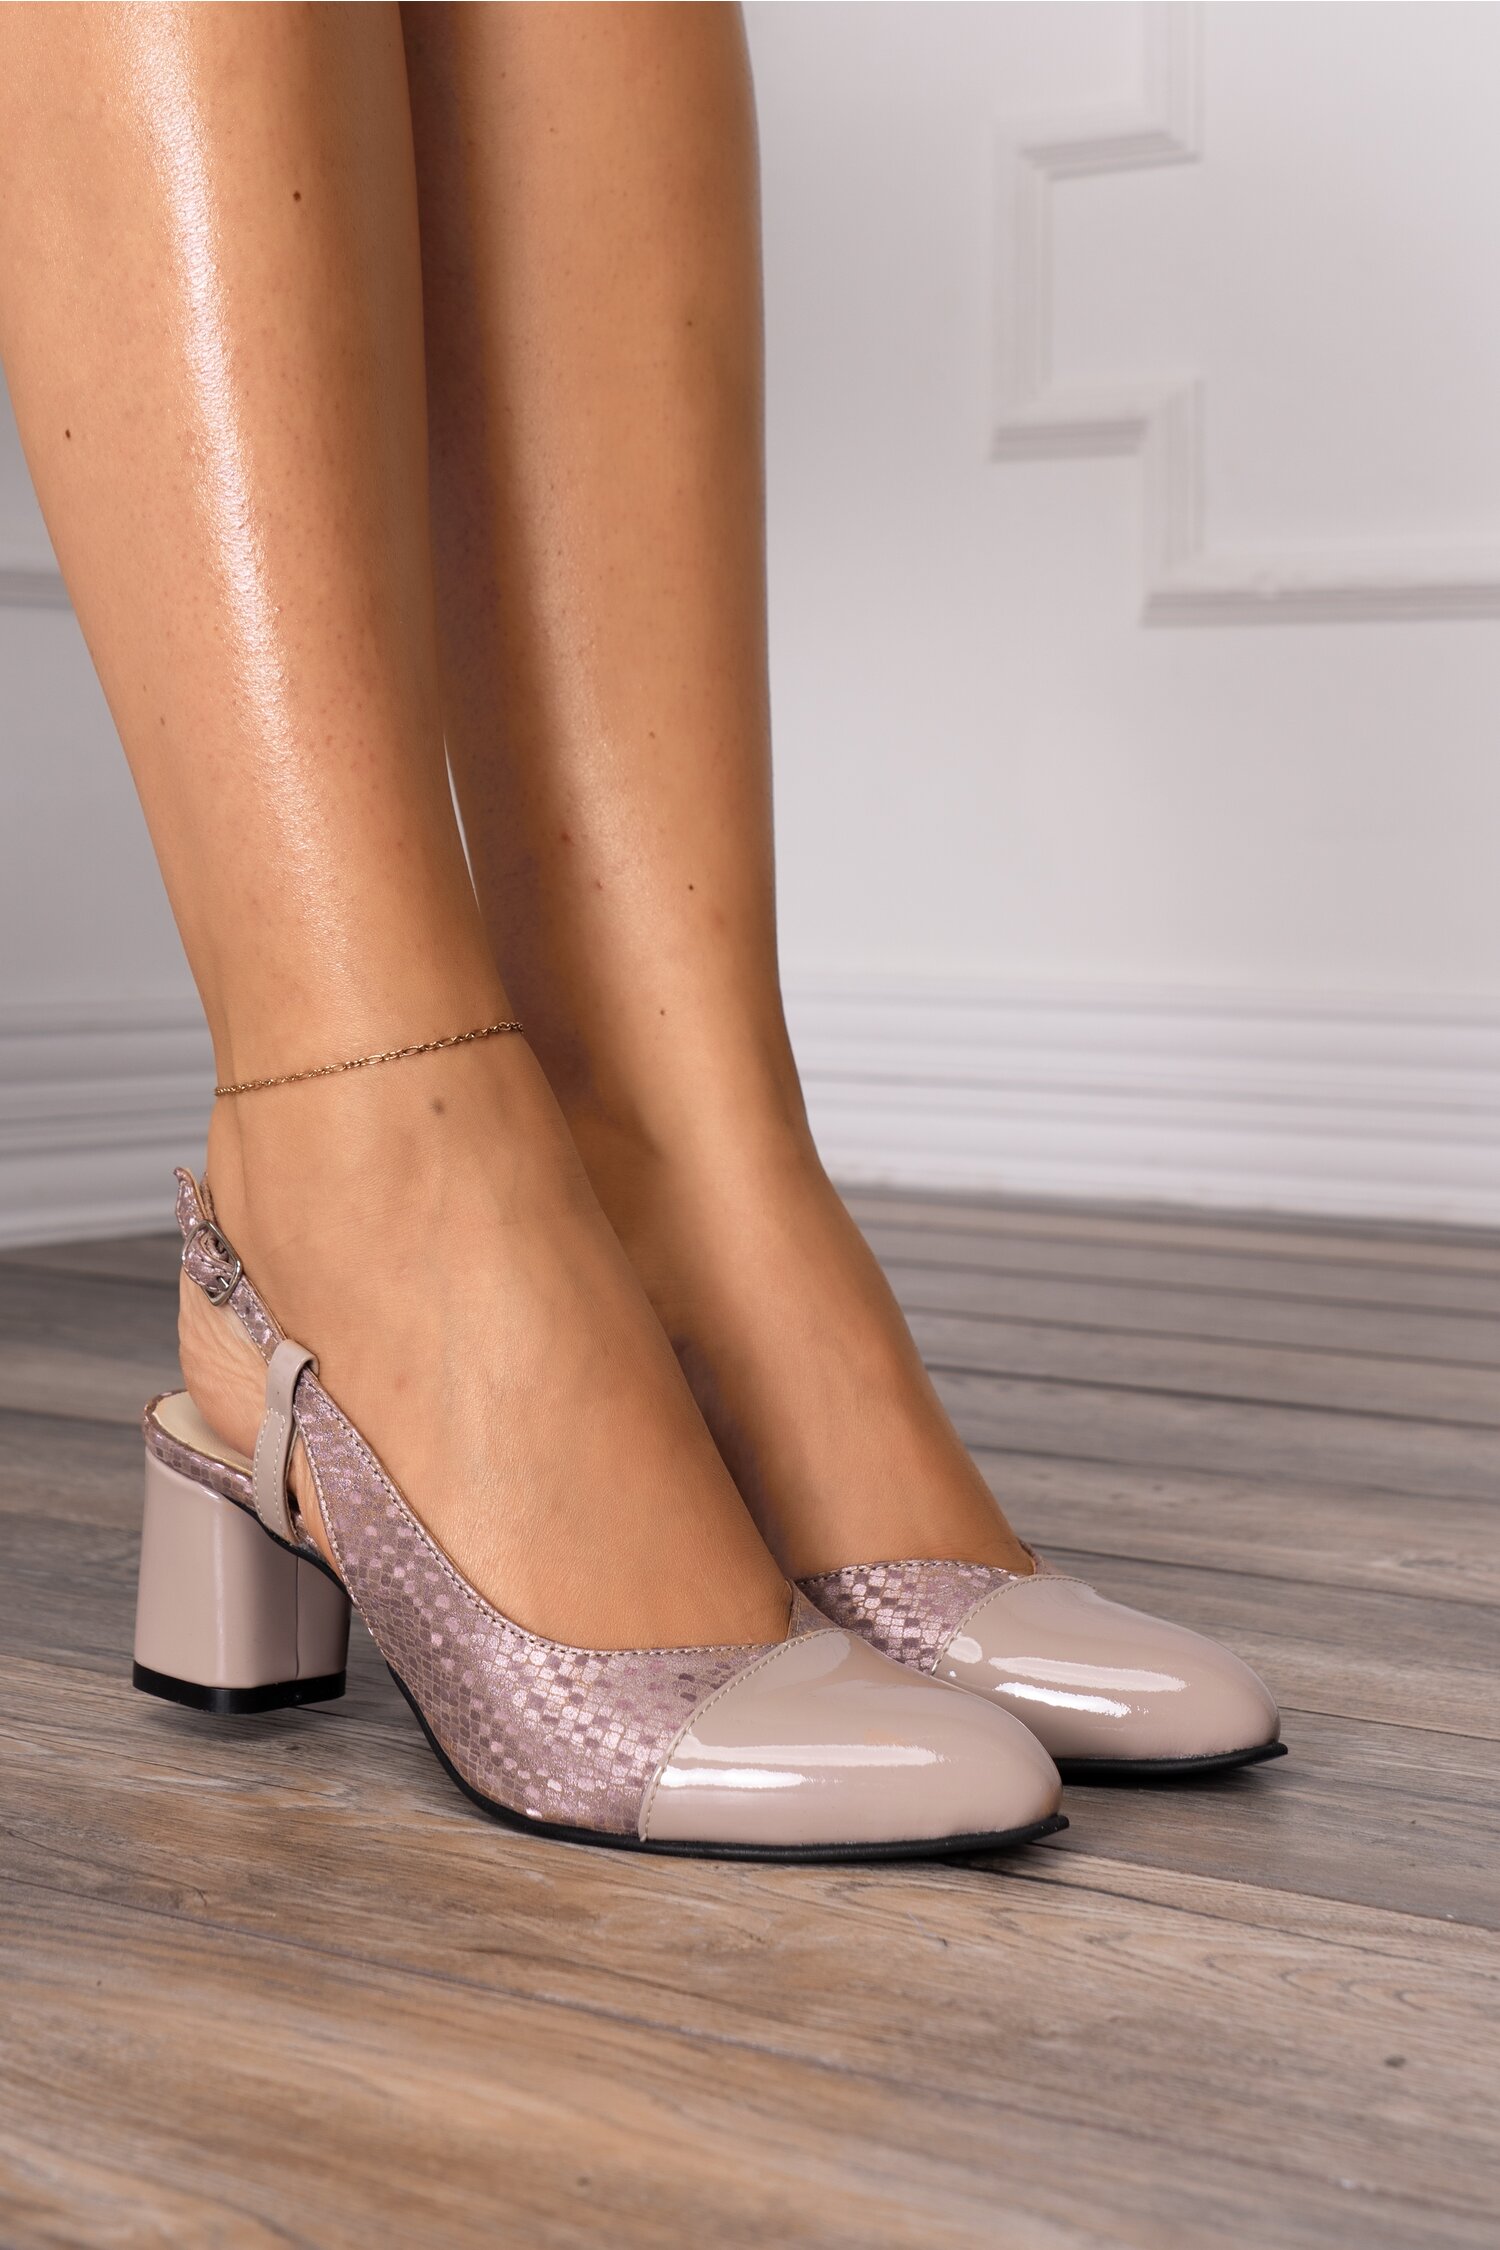 Pantofi bej cu imprimeu cu reflexii roze